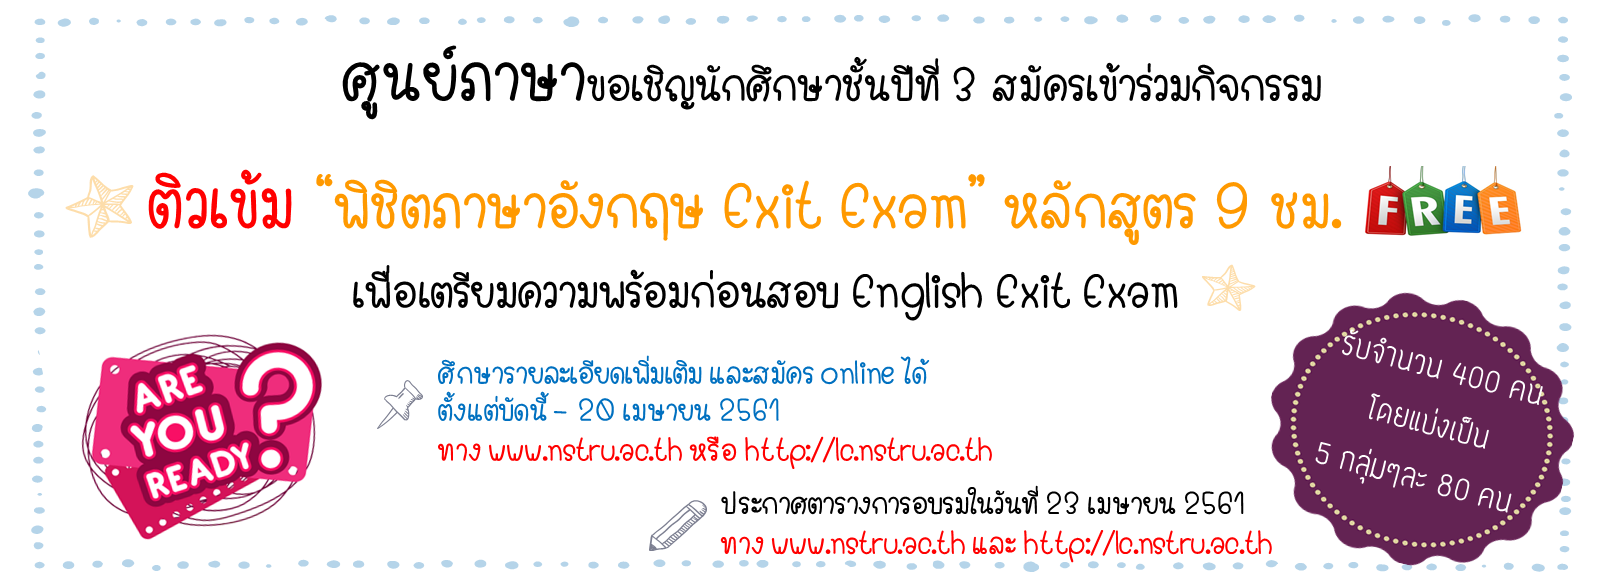 ศูนย์ภาษาจัดกิจกรรมอบรมภาษาอังกฤษ หัวข้อ “พิชิตภาษาอังกฤษ Exit Exam” หลักสูตร 9 ชั่วโมง